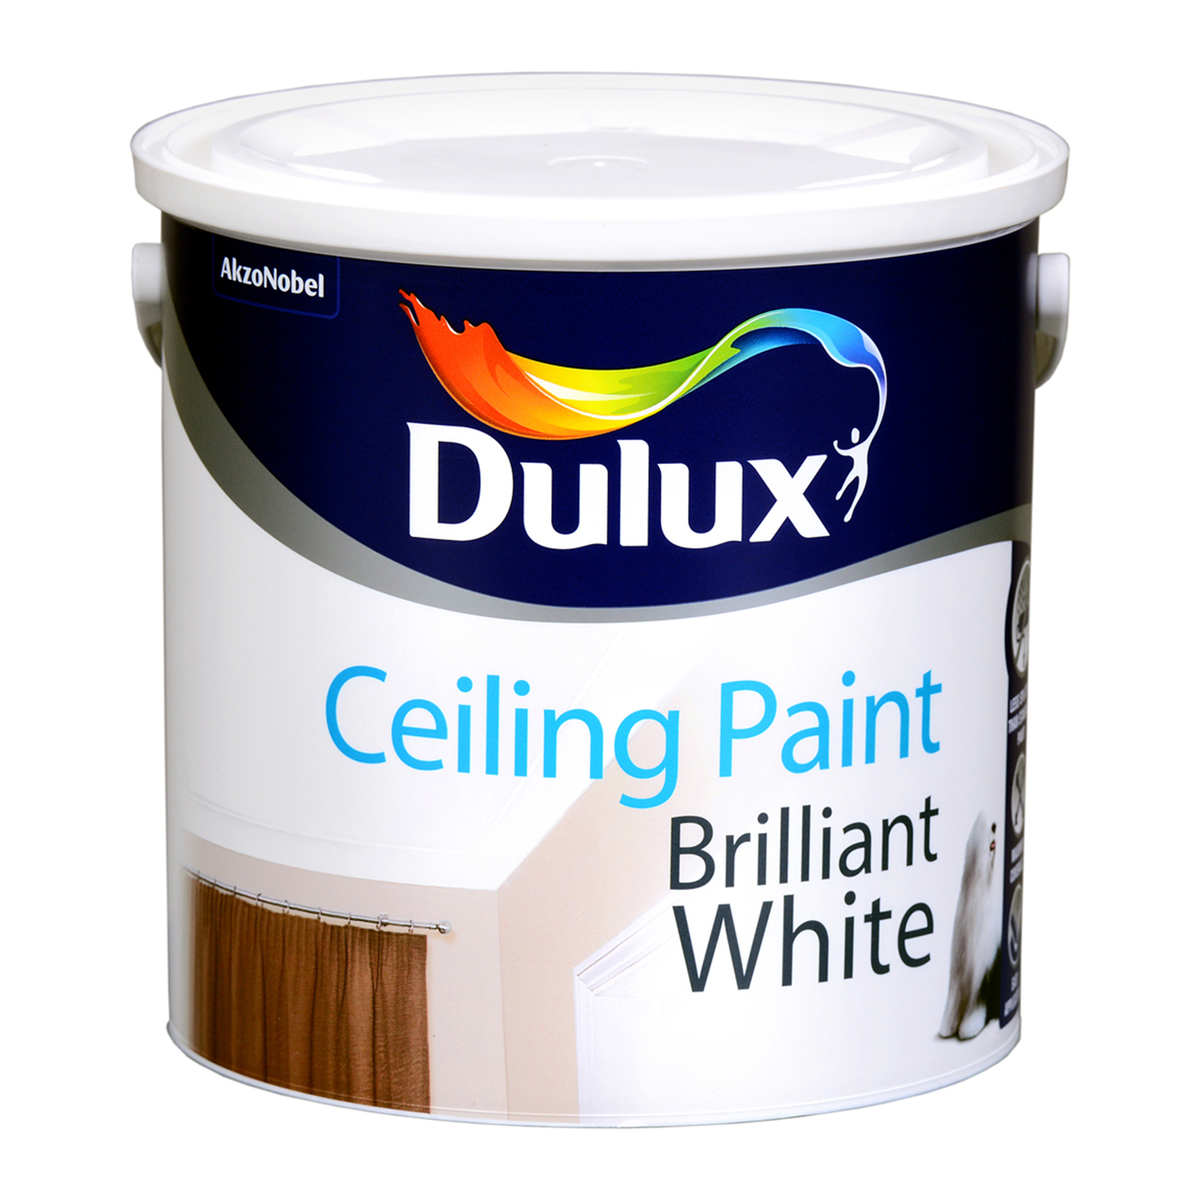 Dulux Ceiling Paint Brilliant White 2 5l